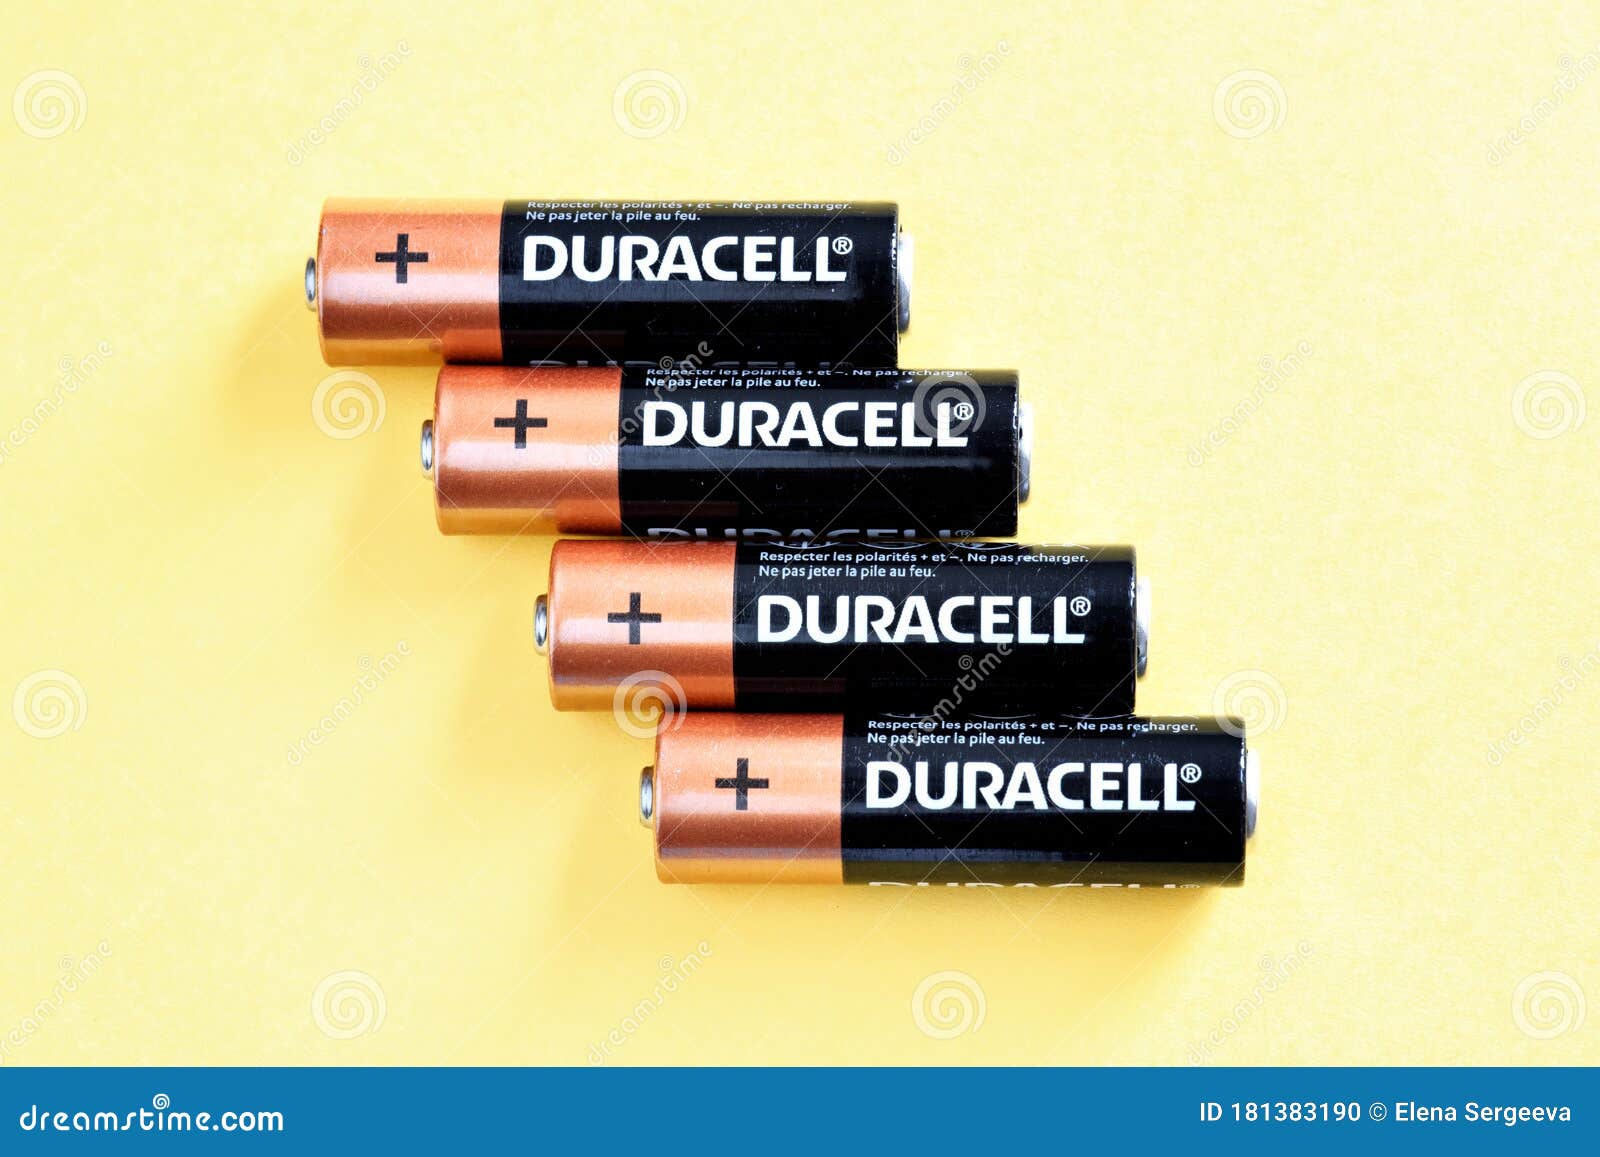 DURACELL AA LR6 - Pack de 4 Piles rechargeables Alcalines 2500 mAh